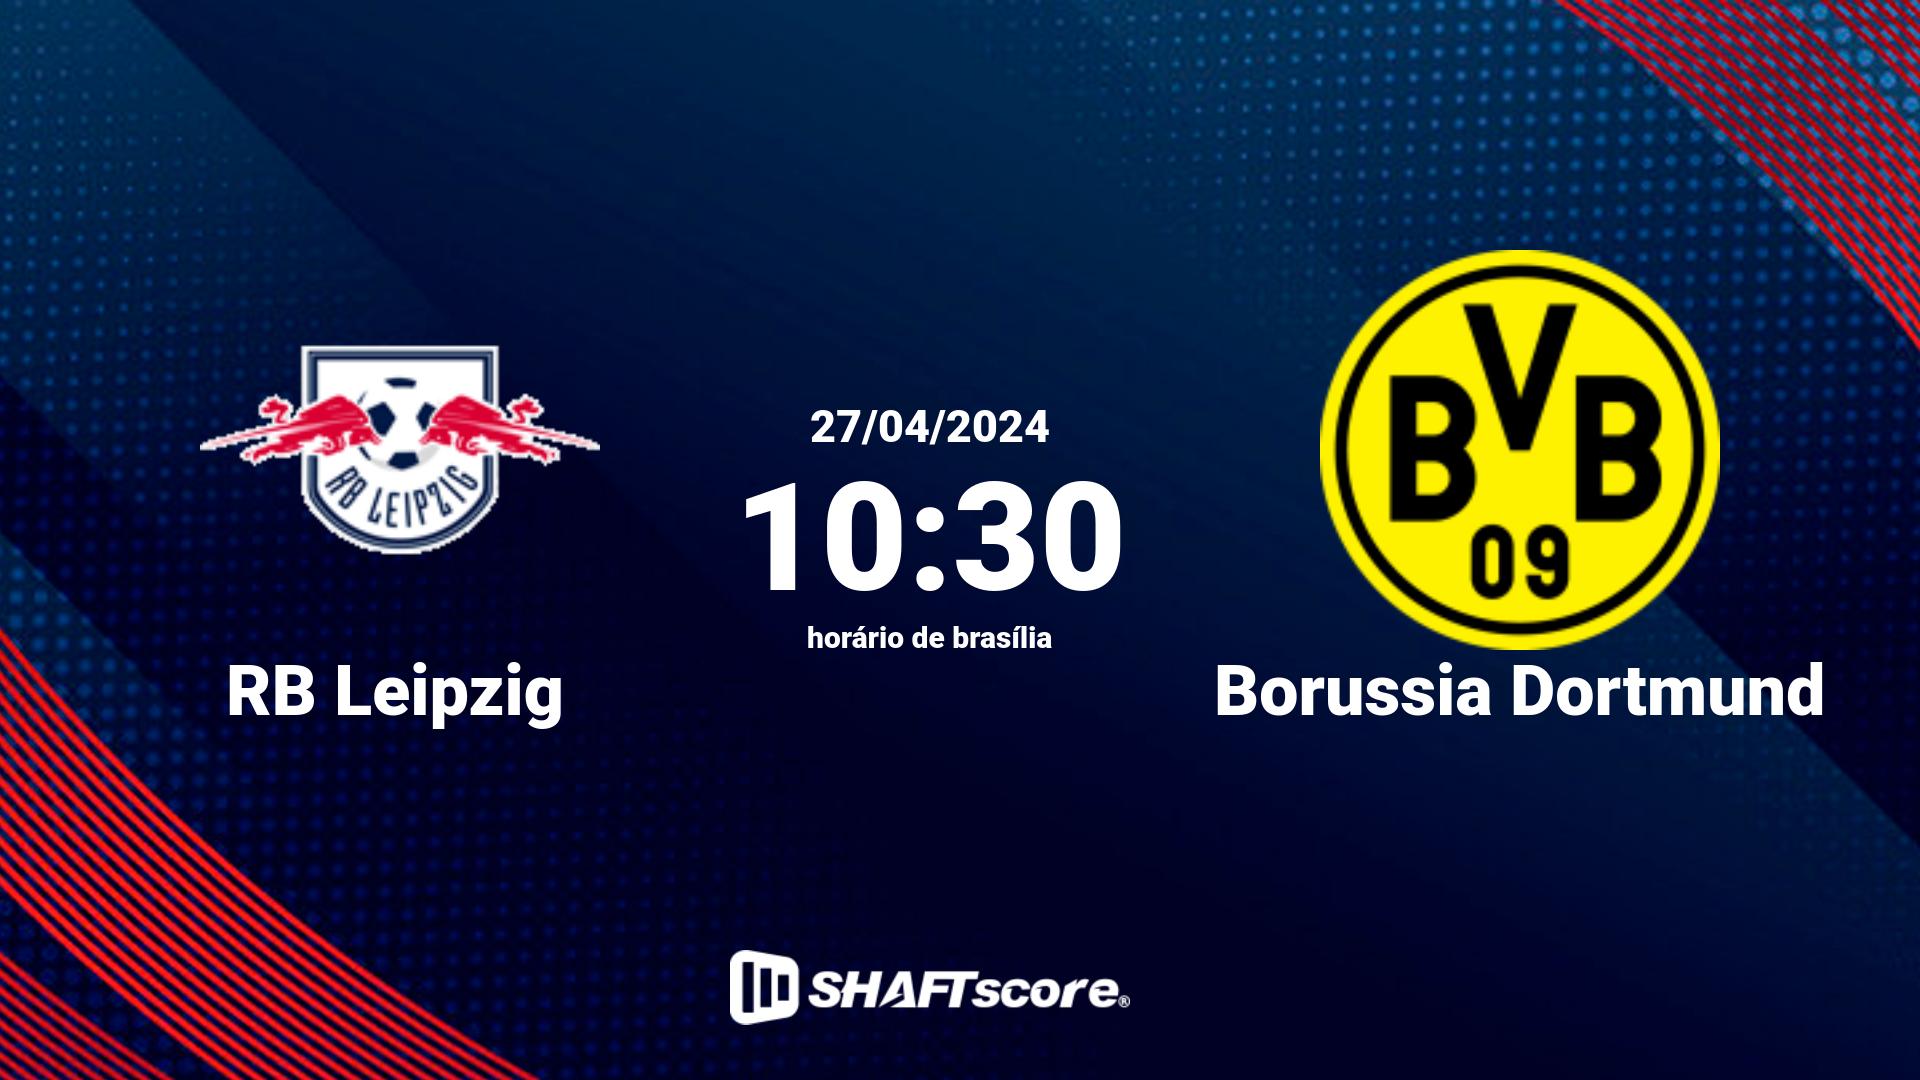 Estatísticas do jogo RB Leipzig vs Borussia Dortmund 27.04 10:30